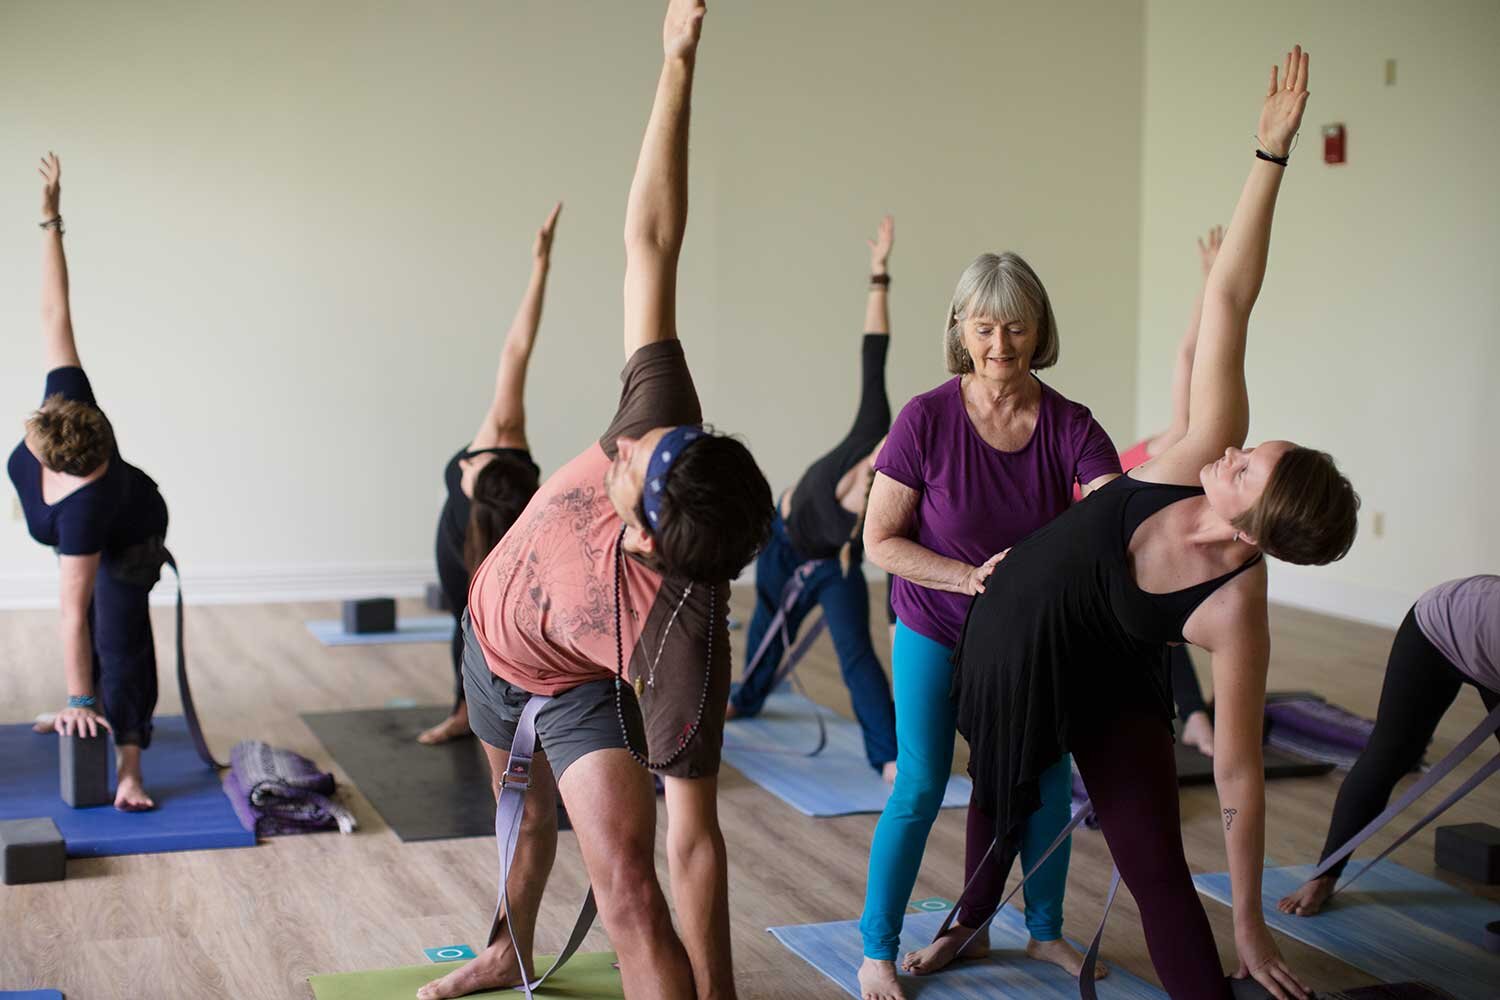 Pop-up faz aulão de yoga no Canadá com alunos em redomas de plástico - GQ